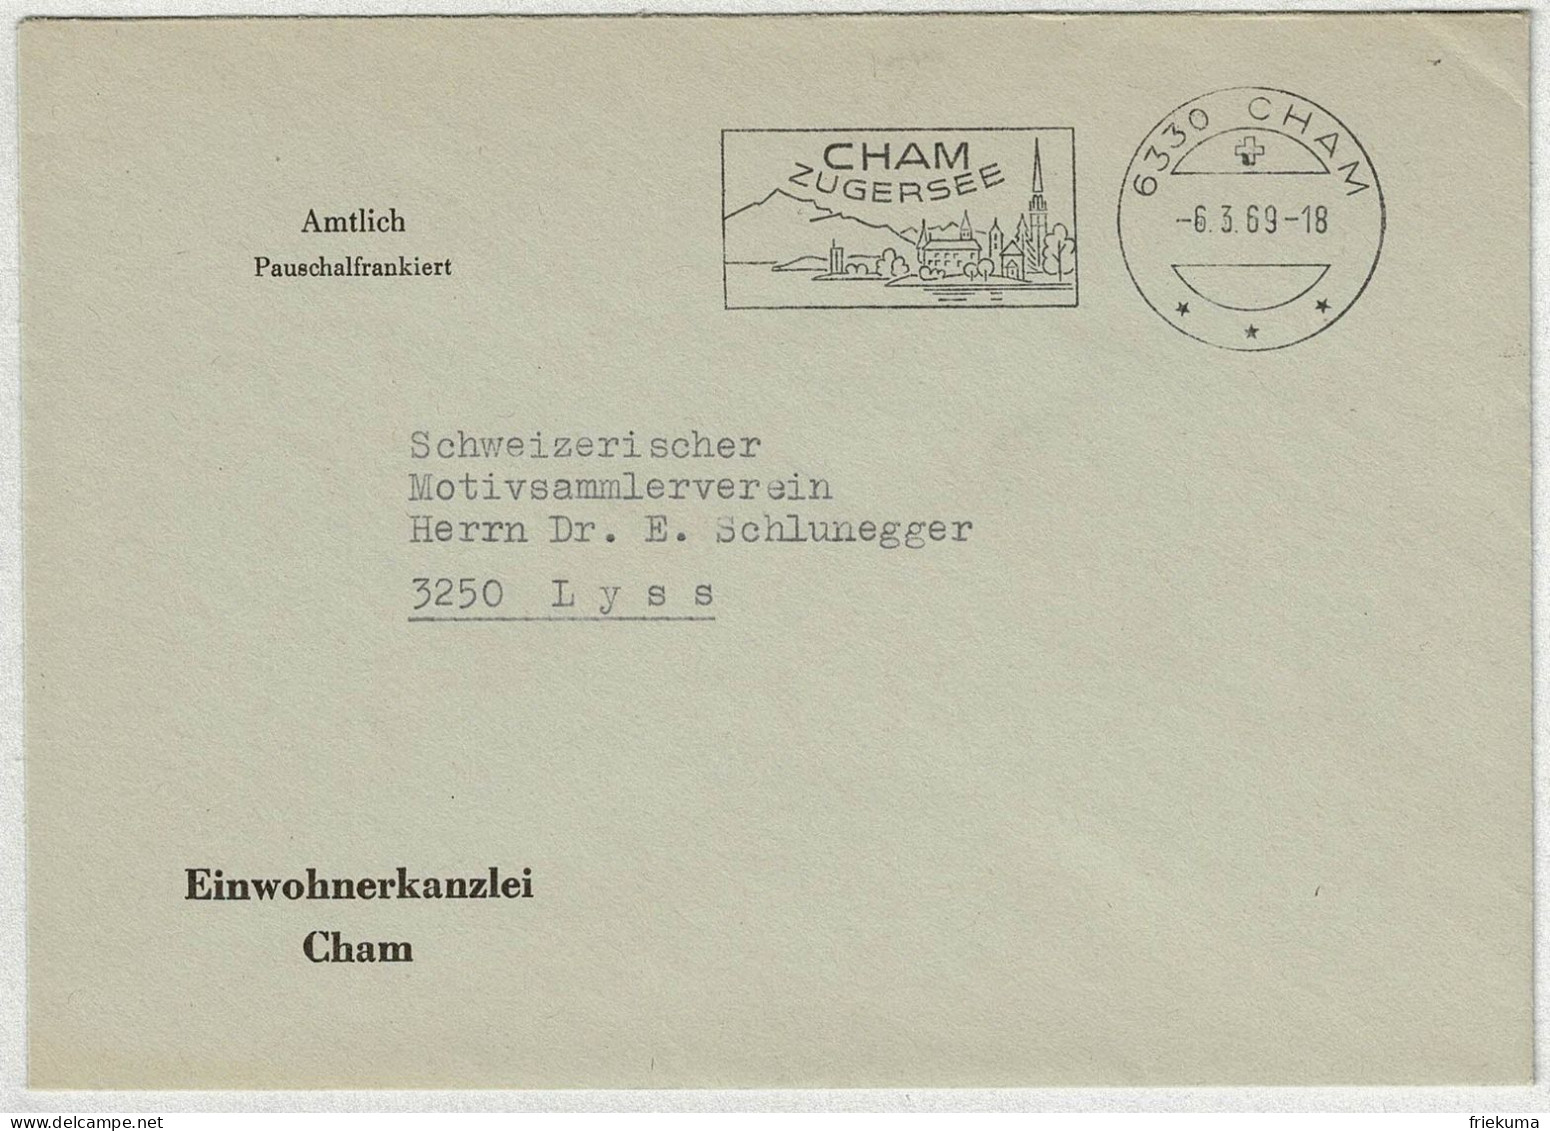 Schweiz 1969, Brief Amtlich Pauschalfrankiert Cham - Lyss - Marcofilia